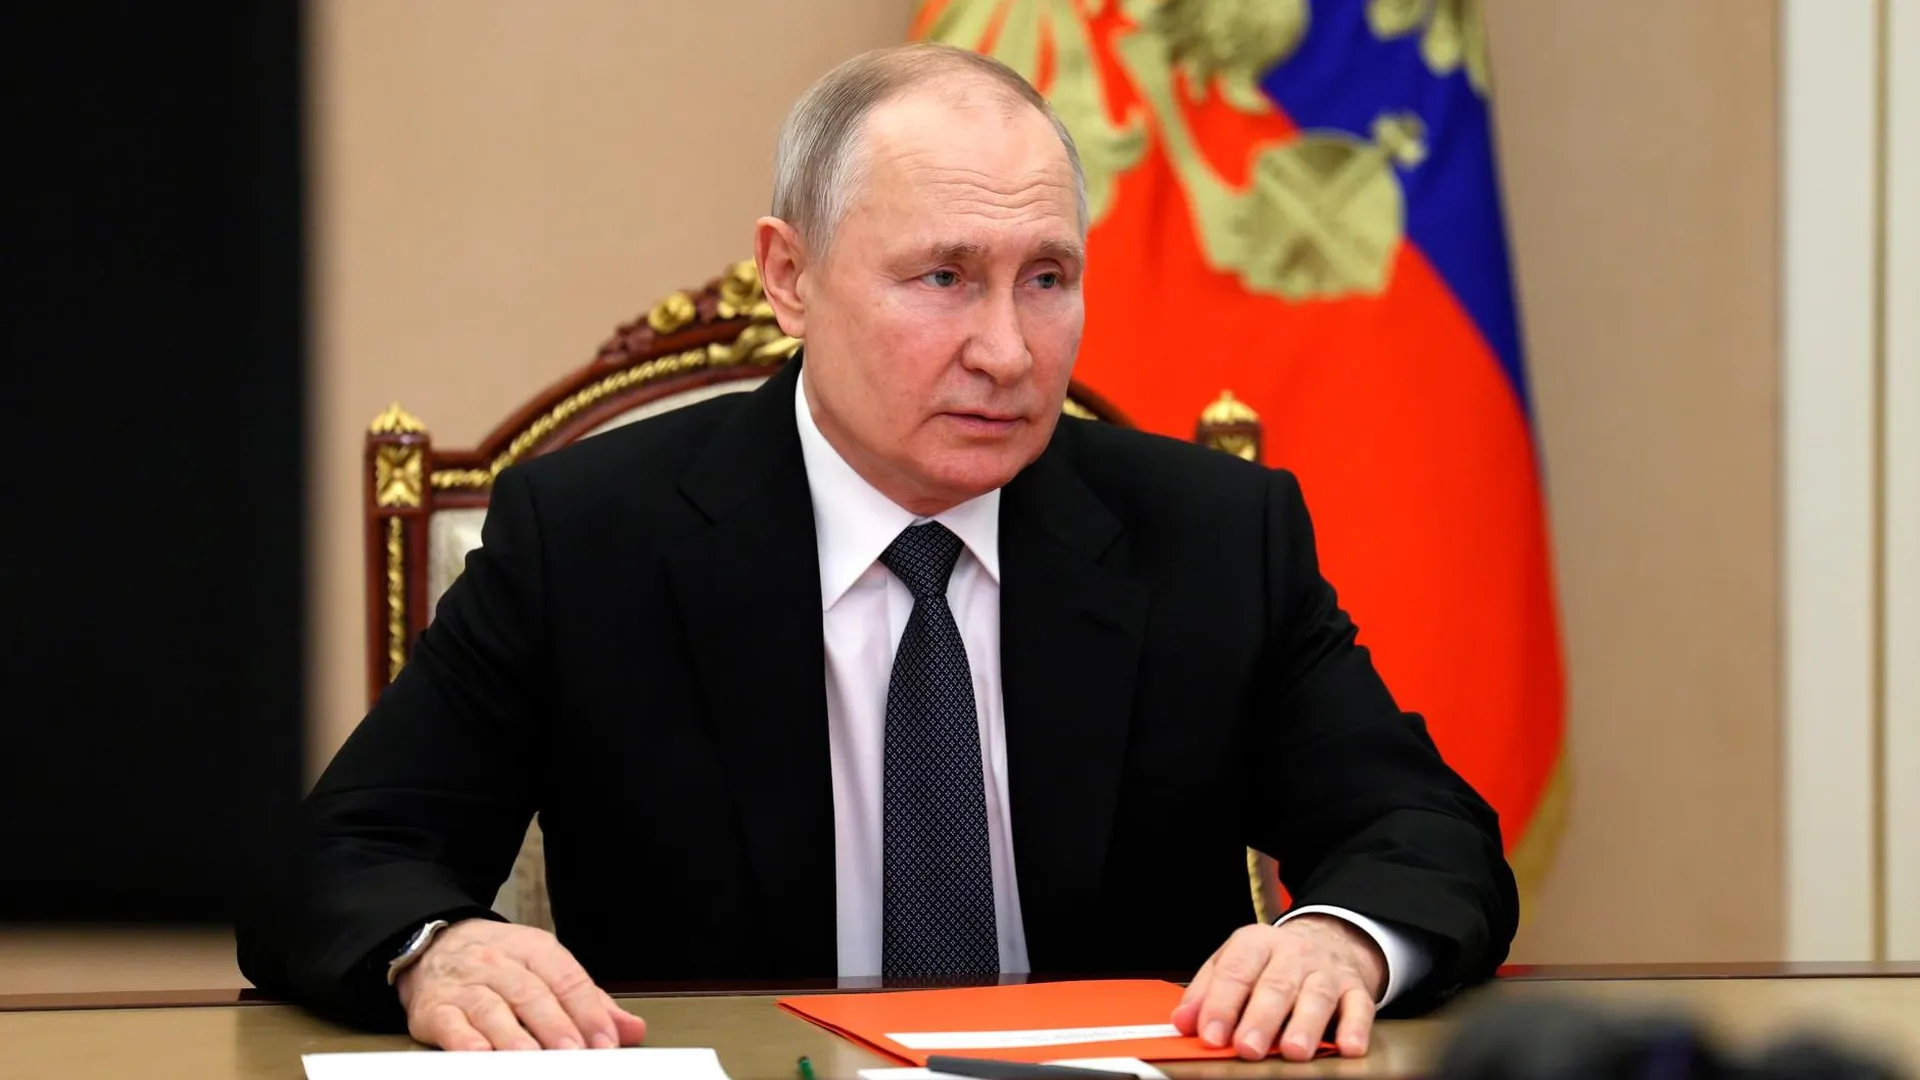 Читатели «Гуаньча» поддержали решение Путина об ответе на изъятие российских активов